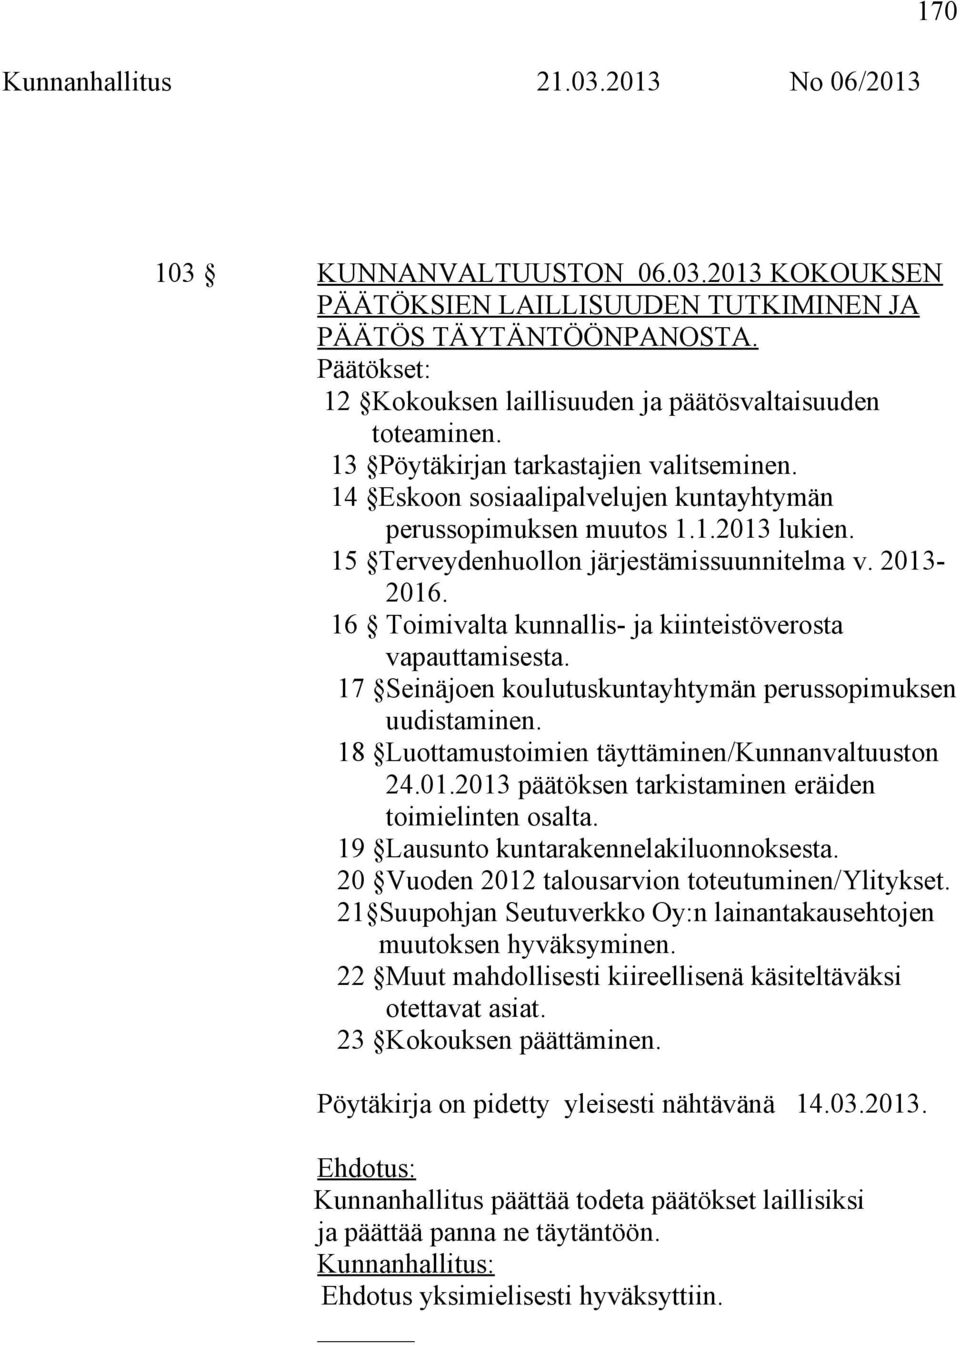 16 Toimivalta kunnallis- ja kiinteistöverosta vapauttamisesta. 17 Seinäjoen koulutuskuntayhtymän perussopimuksen uudistaminen. 18 Luottamustoimien täyttäminen/kunnanvaltuuston 24.01.